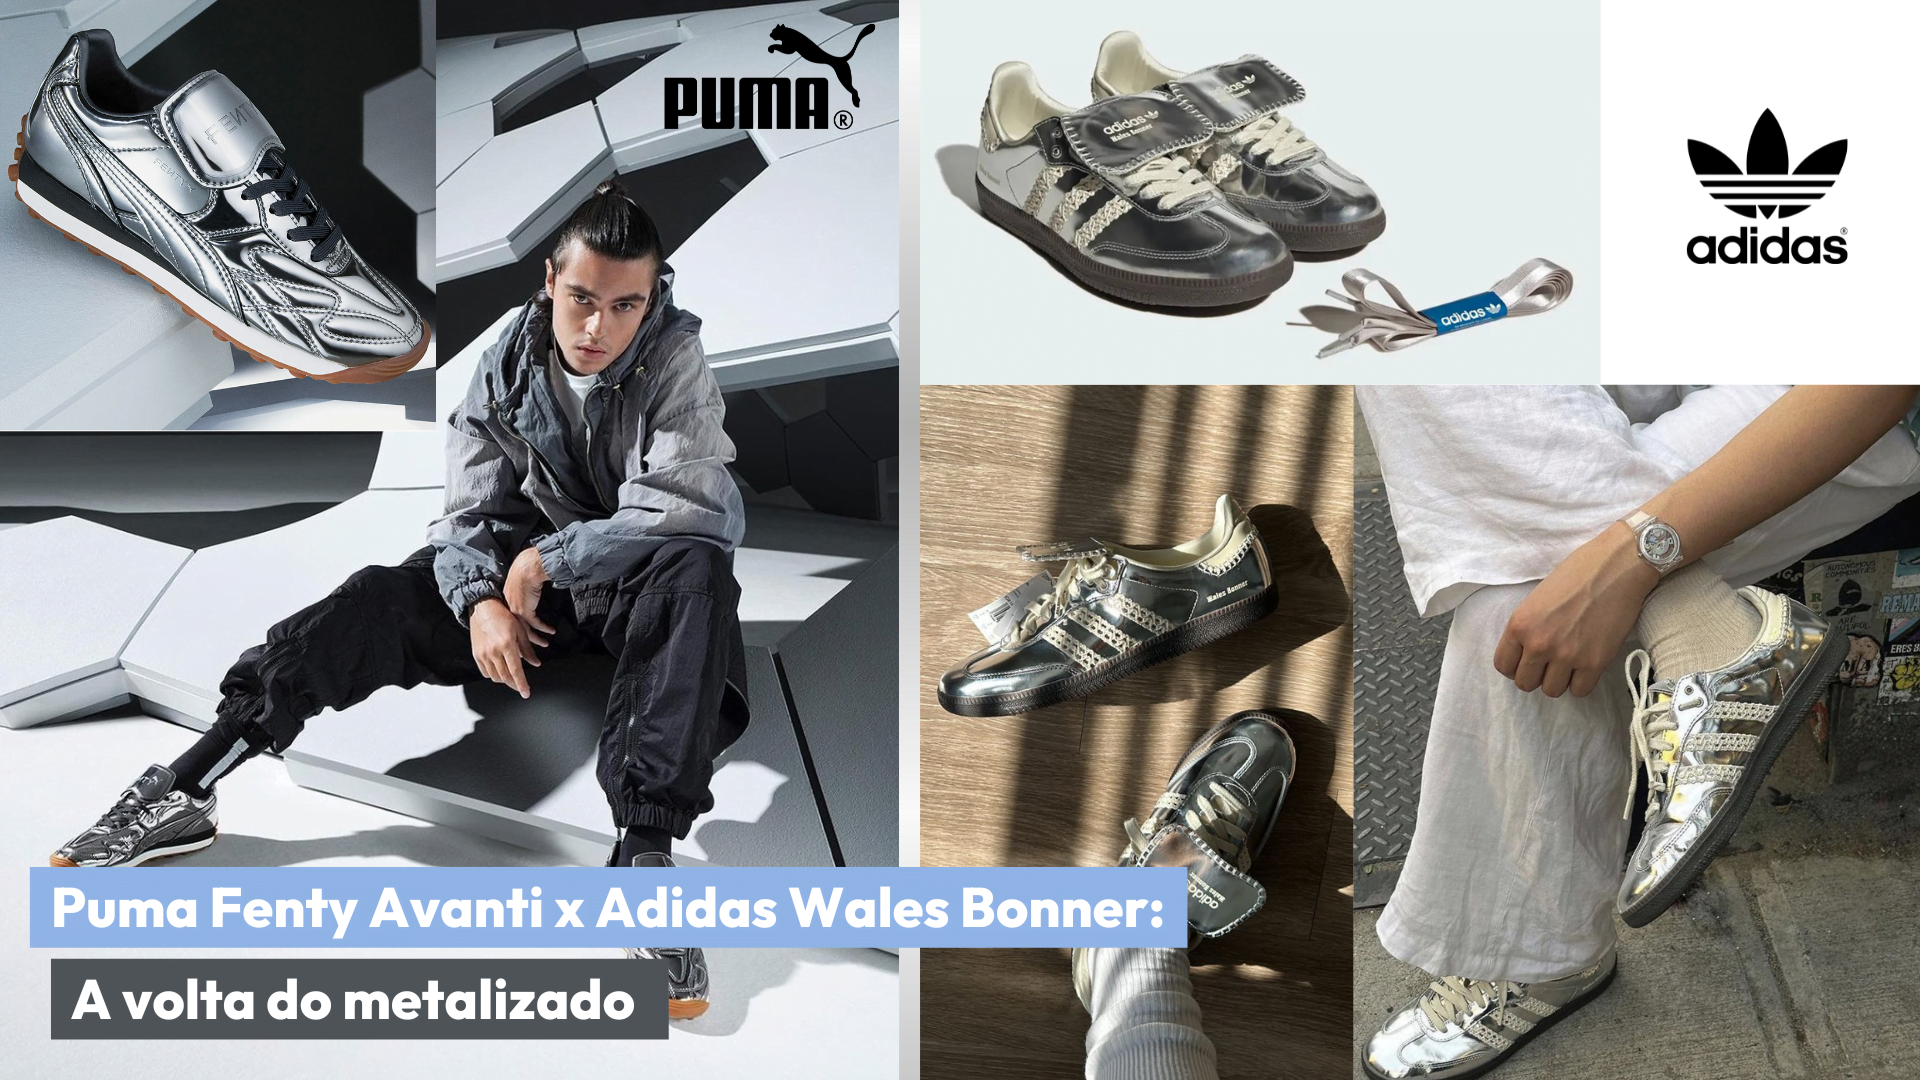 Colagem com modelo de tênis Puma e Adidas para ilustrar o assunto do post.